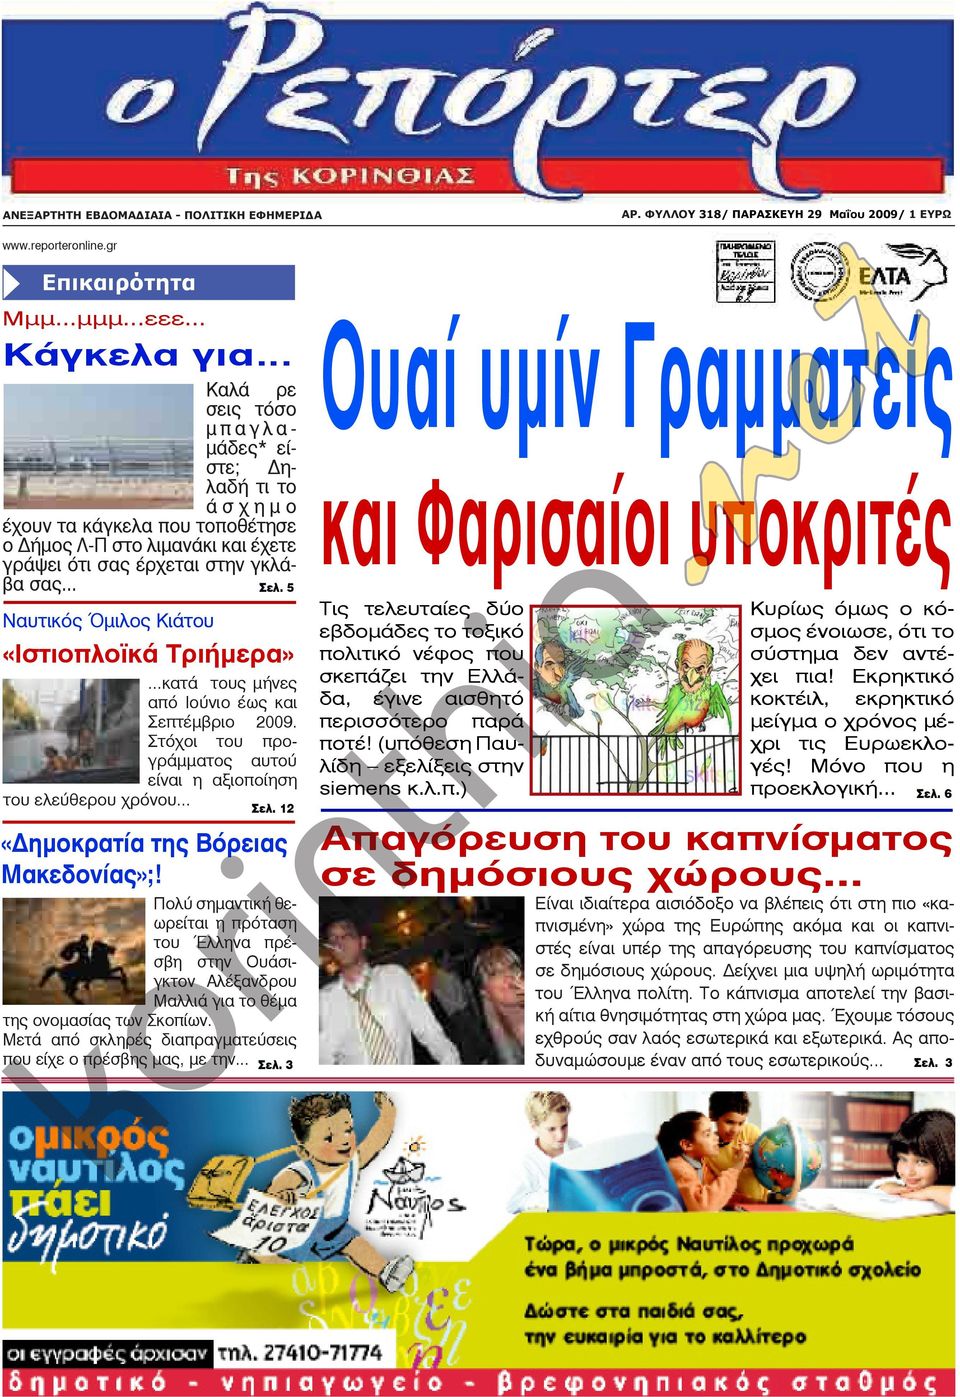 .. Ναυτικός Όμιλος Κιάτου Σελ. 5 «Ιστιοπλοϊκά Τριήμερα»...κατά τους μήνες από Ιούνιο έως και Σεπτέμβριο 2009. Στόχοι του προγράμματος αυτού είναι η αξιοποίηση του ελεύθερου χρόνου... Σελ. 12 «Δημοκρατία της Βόρειας Μακεδονίας»;!